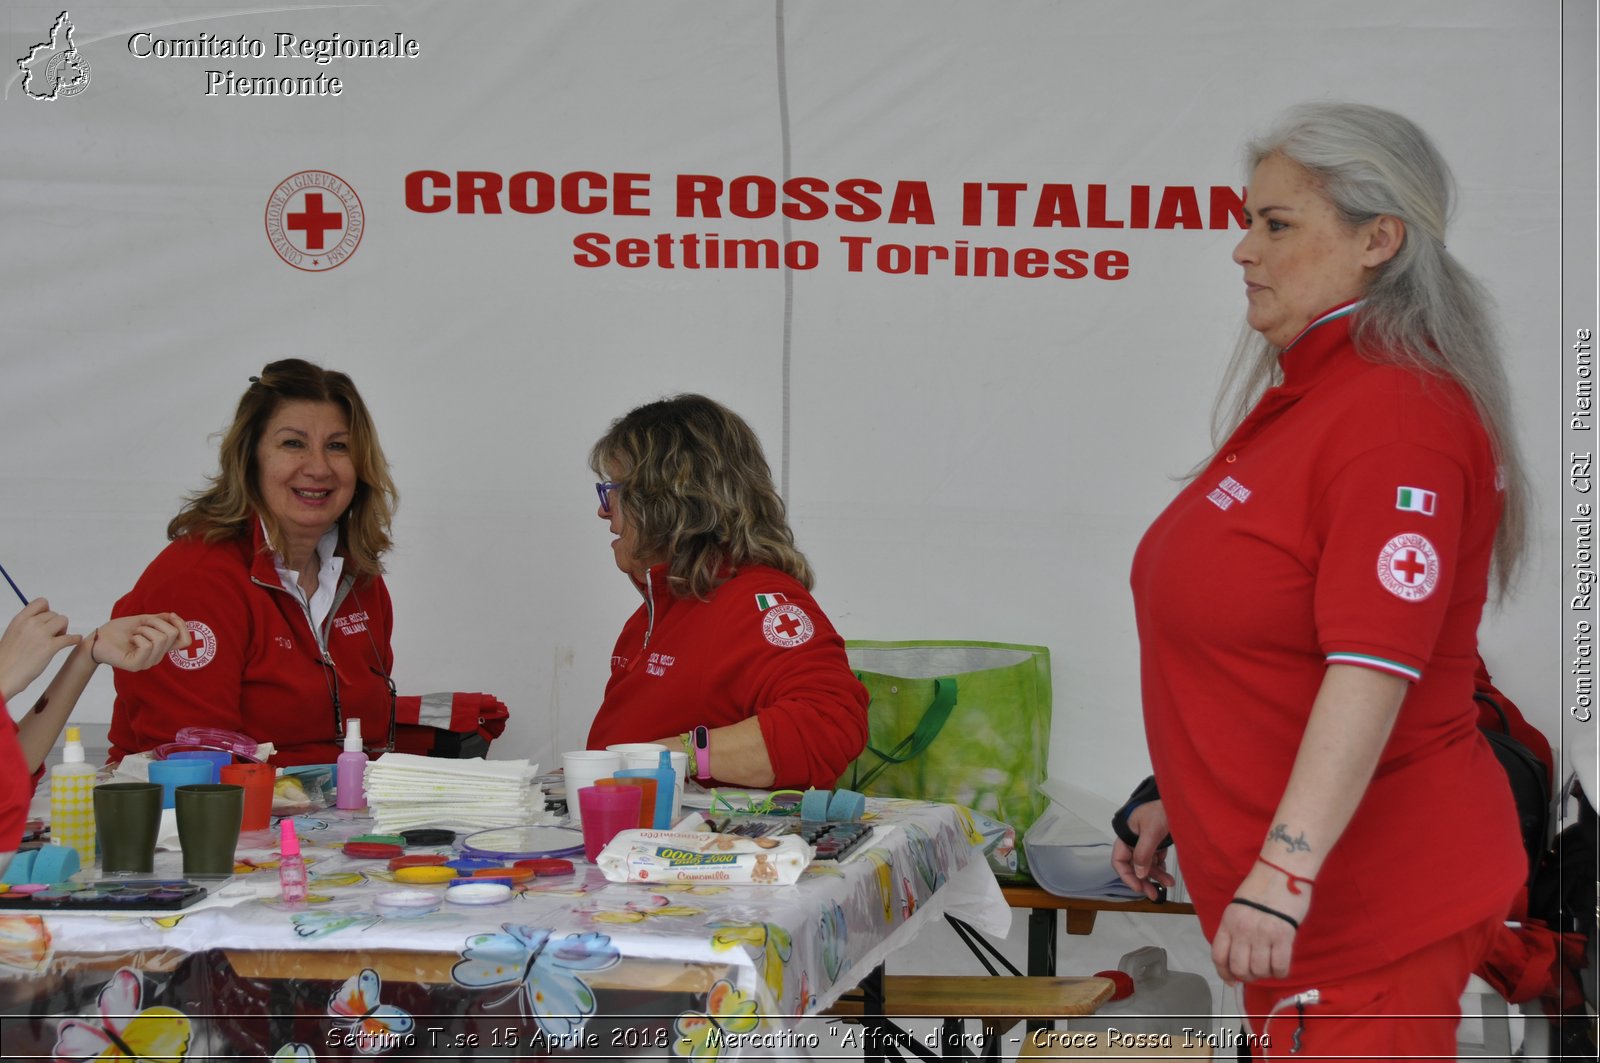 Settimo T.se 15 Aprile 2018 - Mercatino "Affari d'oro" - Croce Rossa Italiana- Comitato Regionale del Piemonte